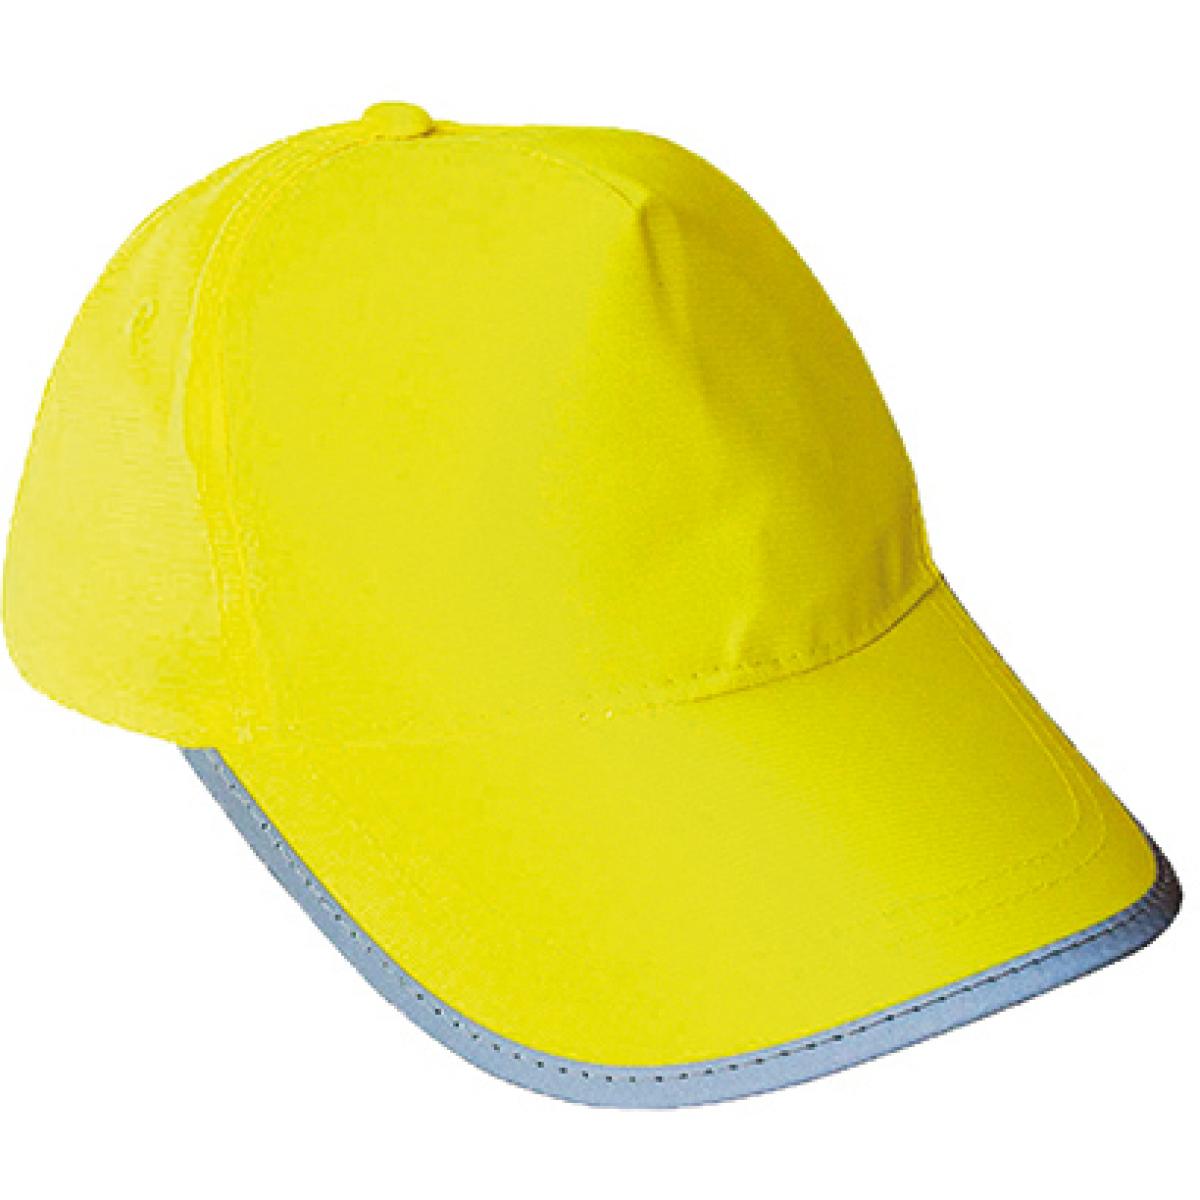 Hersteller: Korntex Herstellernummer: KXCAP Artikelbezeichnung: Kinder Reflections Mütze / Hi-Viz Fluo-Cap Farbe: Signal Yellow